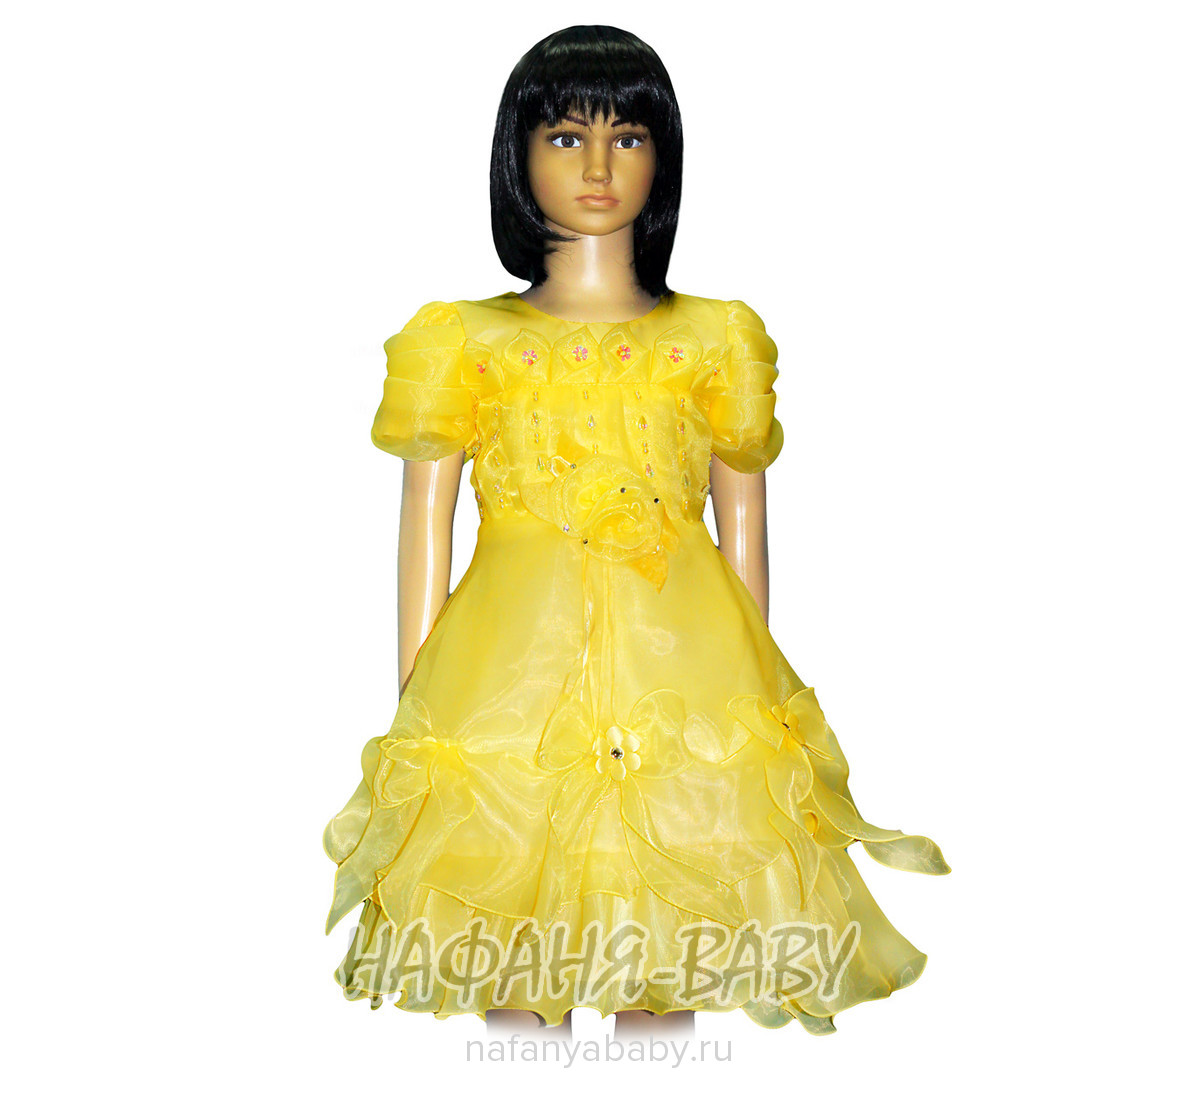 Детское нарядное платье, цвет желтый, купить в интернет магазине Нафаня. арт: 5217.